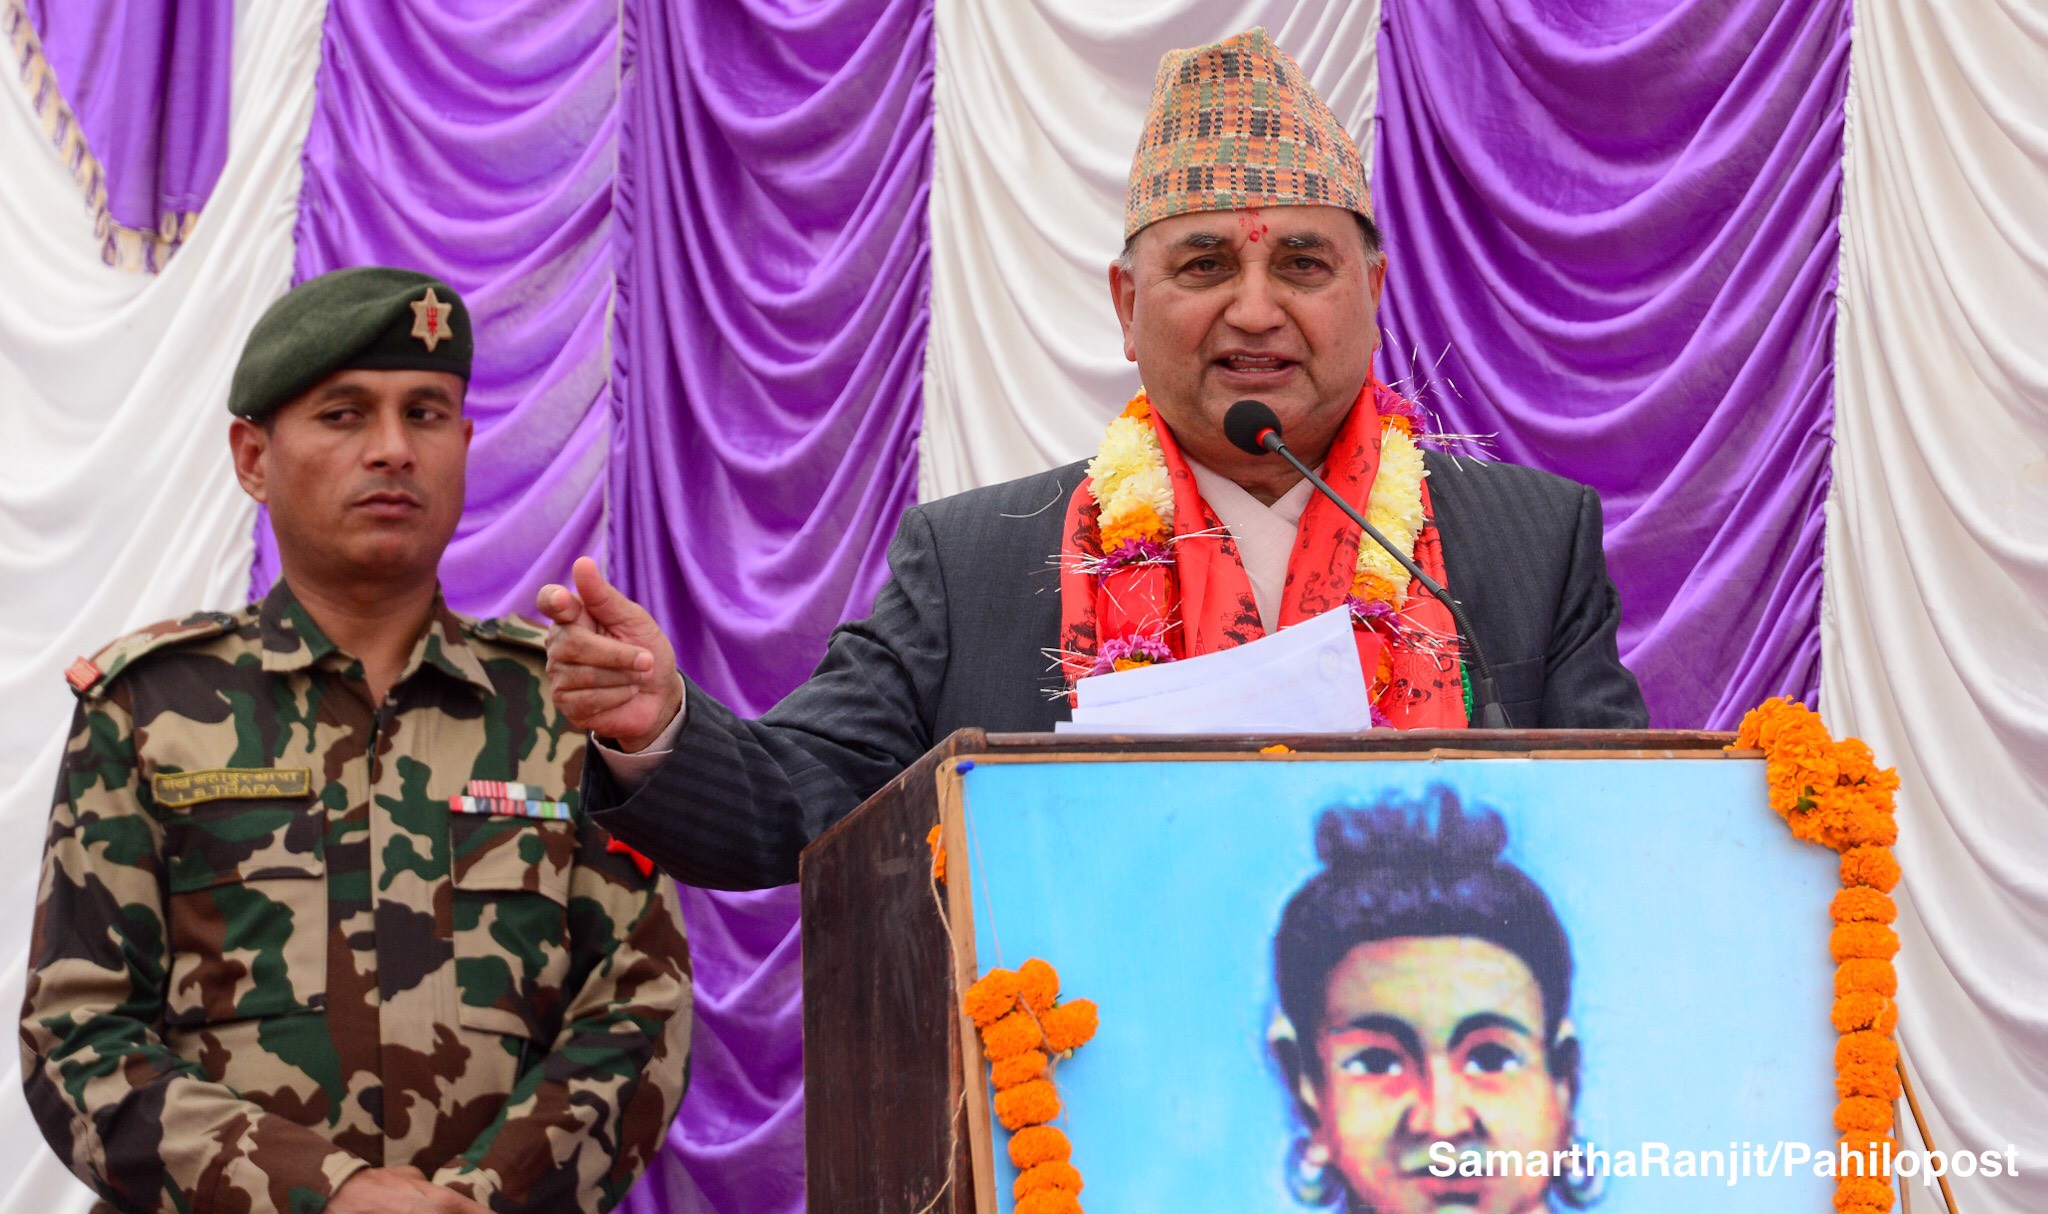 नेपाल संवतको व्यवहारिक कार्यान्वयनमा सरकारको जमानी : उप प्रम इश्वर पोखरेल